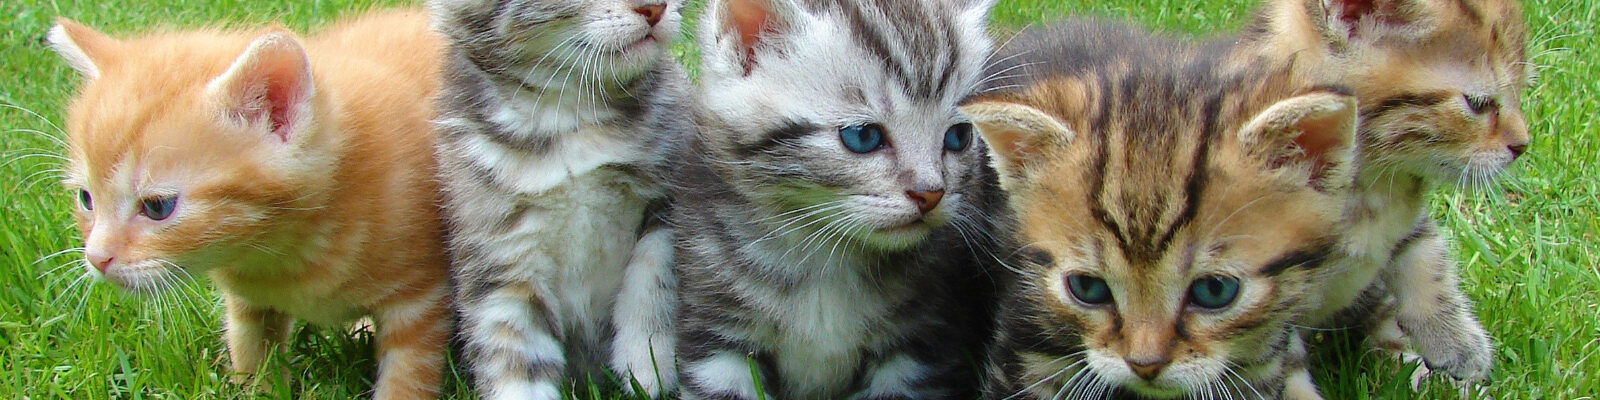 stray cat blues